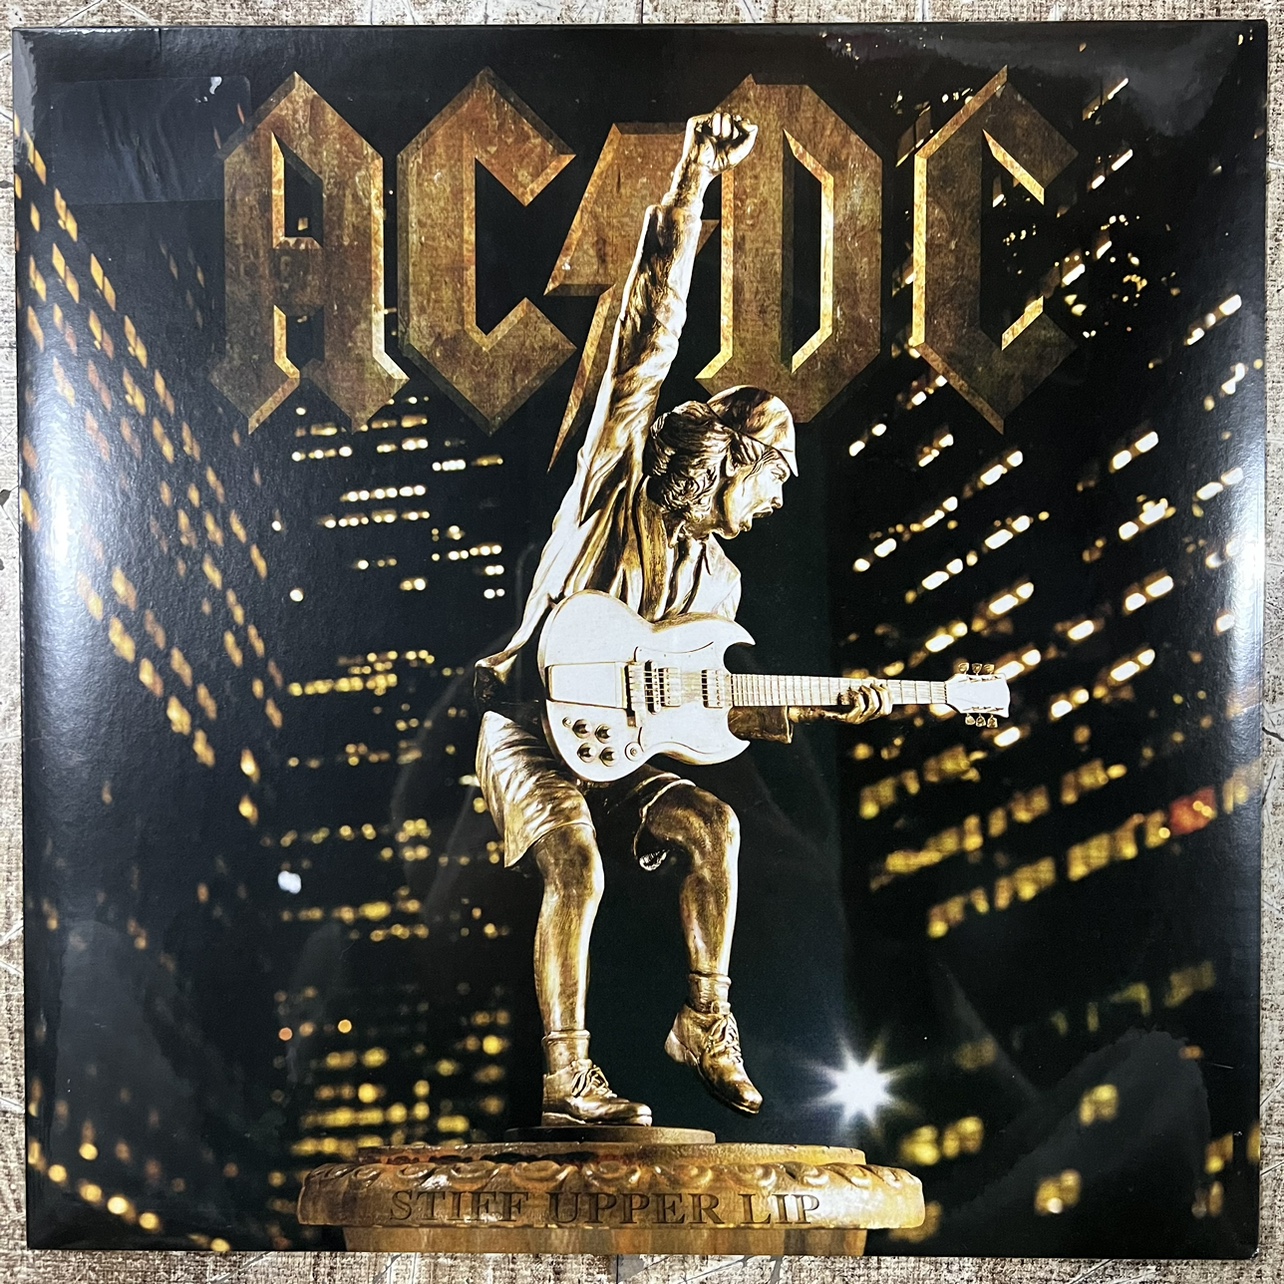 现货AC/DC: Stiff Upper Lip黑胶唱片LP